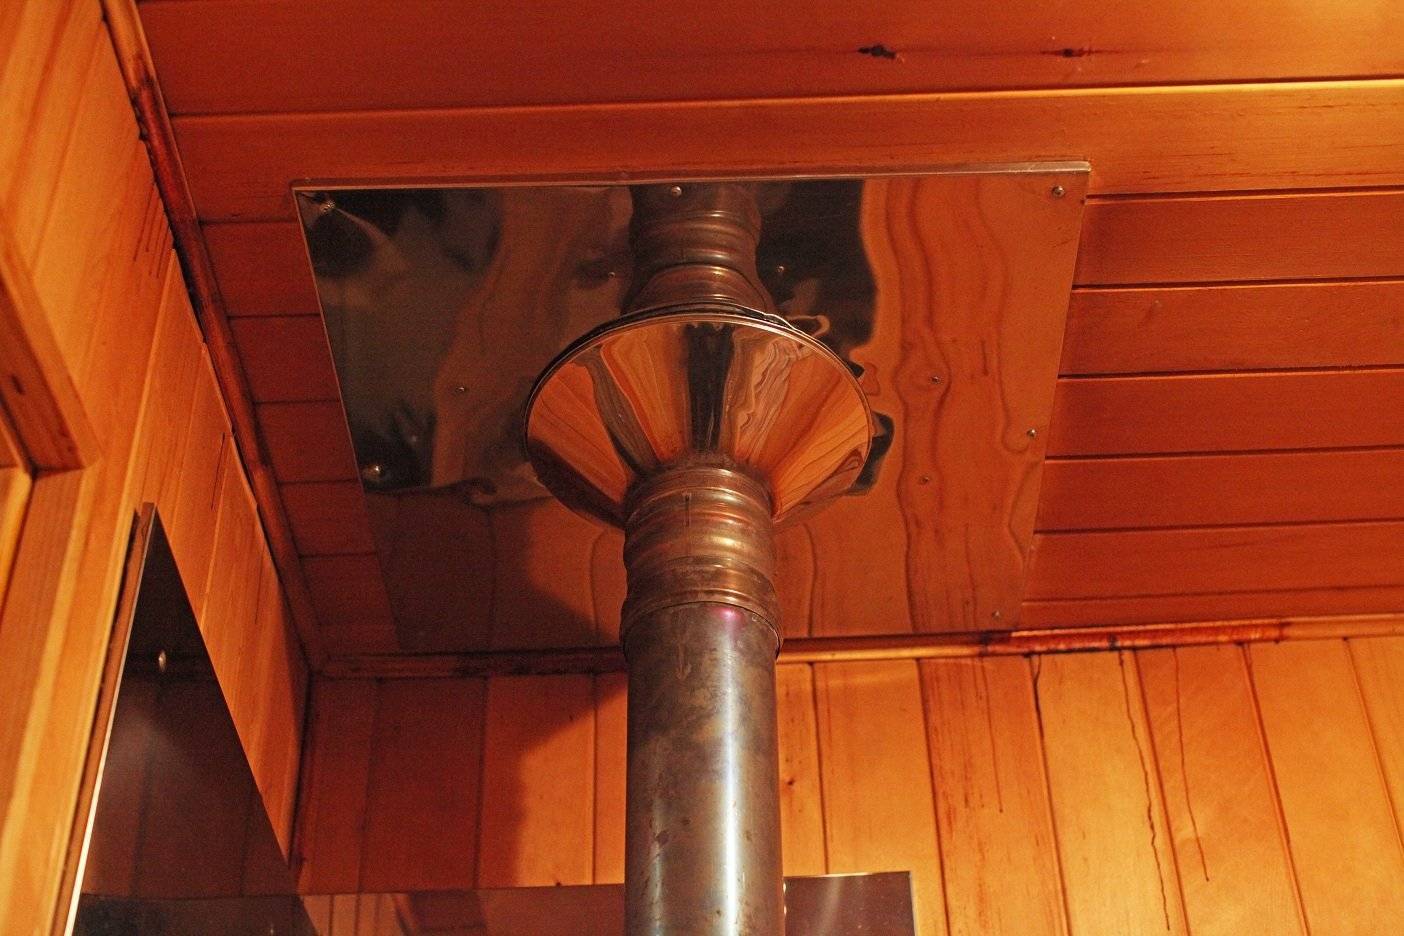 Изоляция трубы в бане: чем обернуть дымоход от возгорания, как сделать в сауне, как изолировать от потолка, чем обложить от печки